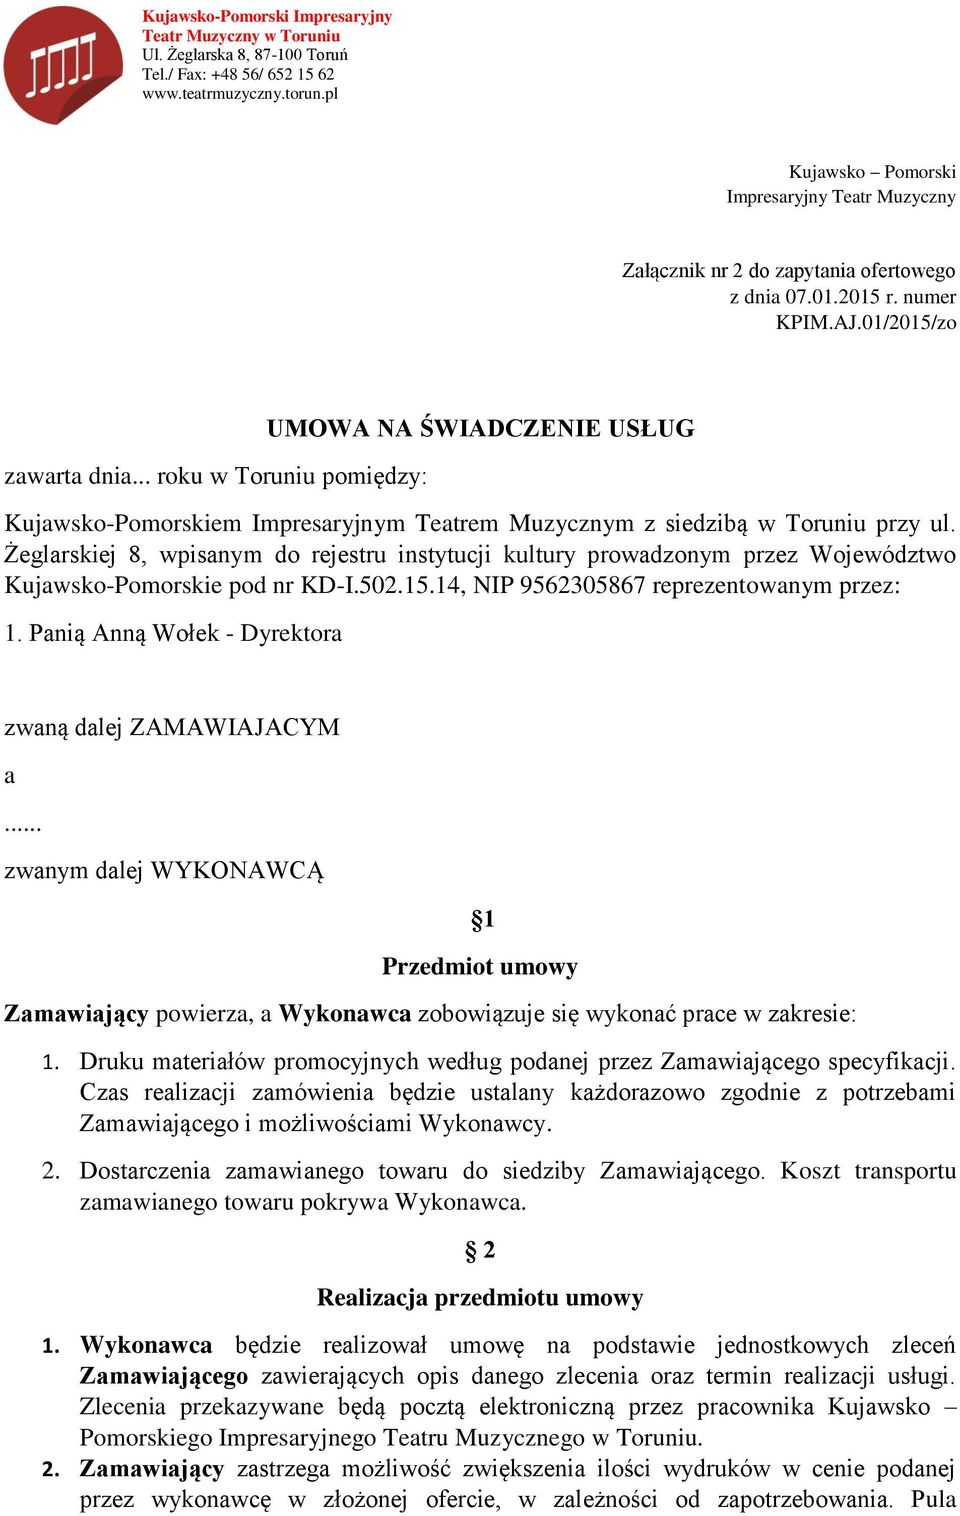 Żeglarskiej 8, wpisanym do rejestru instytucji kultury prowadzonym przez Województwo Kujawsko-Pomorskie pod nr KD-I.502.15.14, NIP 9562305867 reprezentowanym przez: 1.